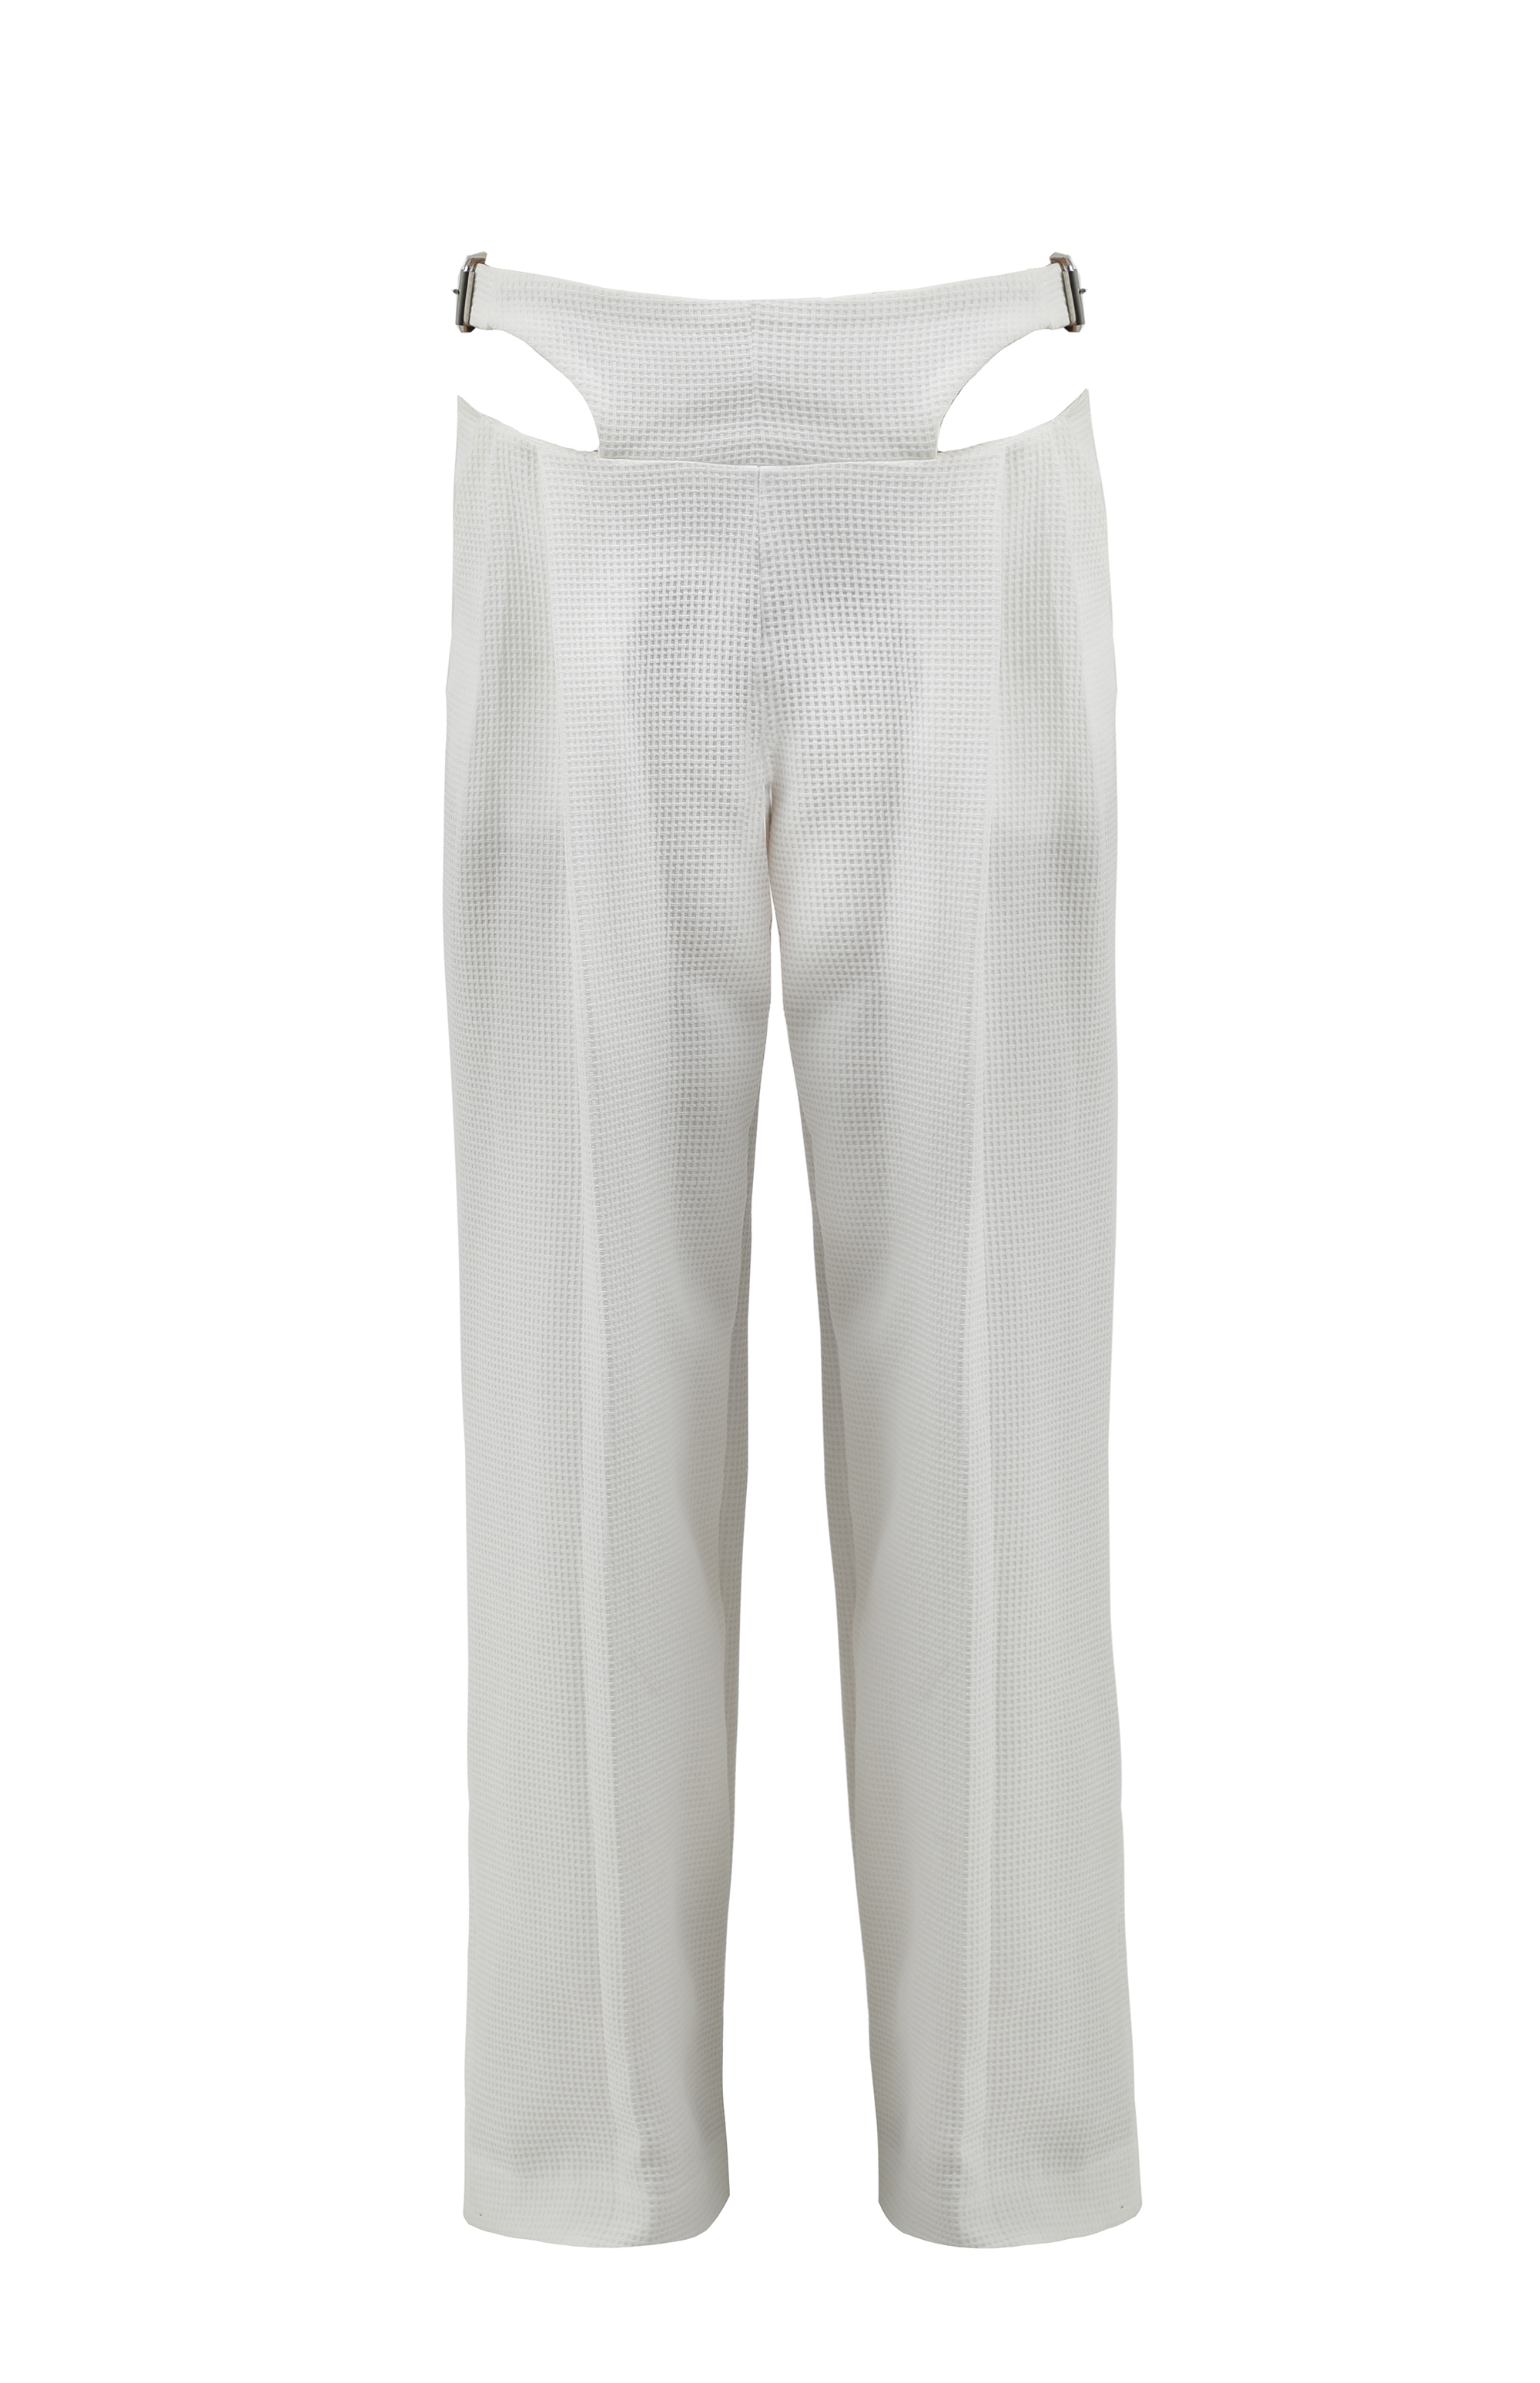 Low-rise white pants